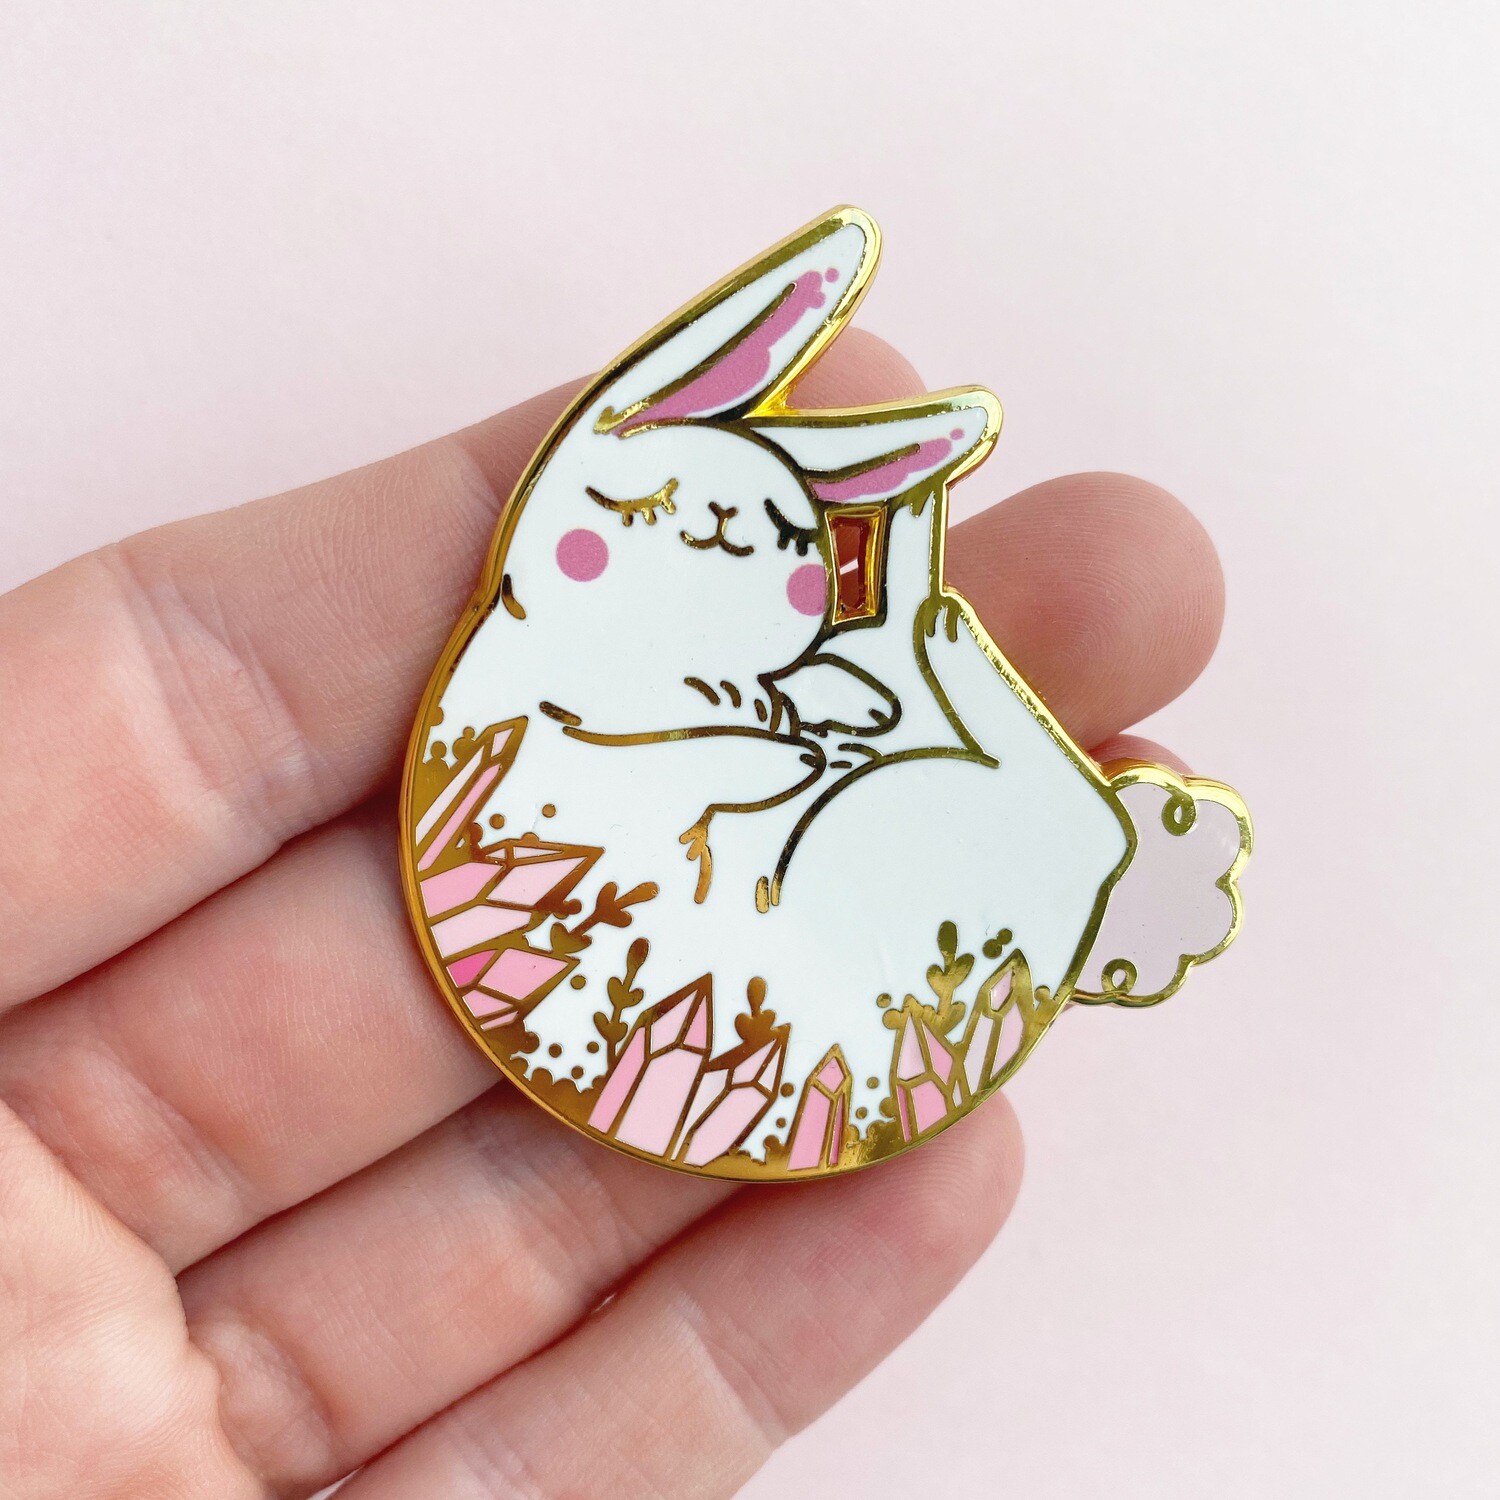 Sleepy Crystal Bunny pin